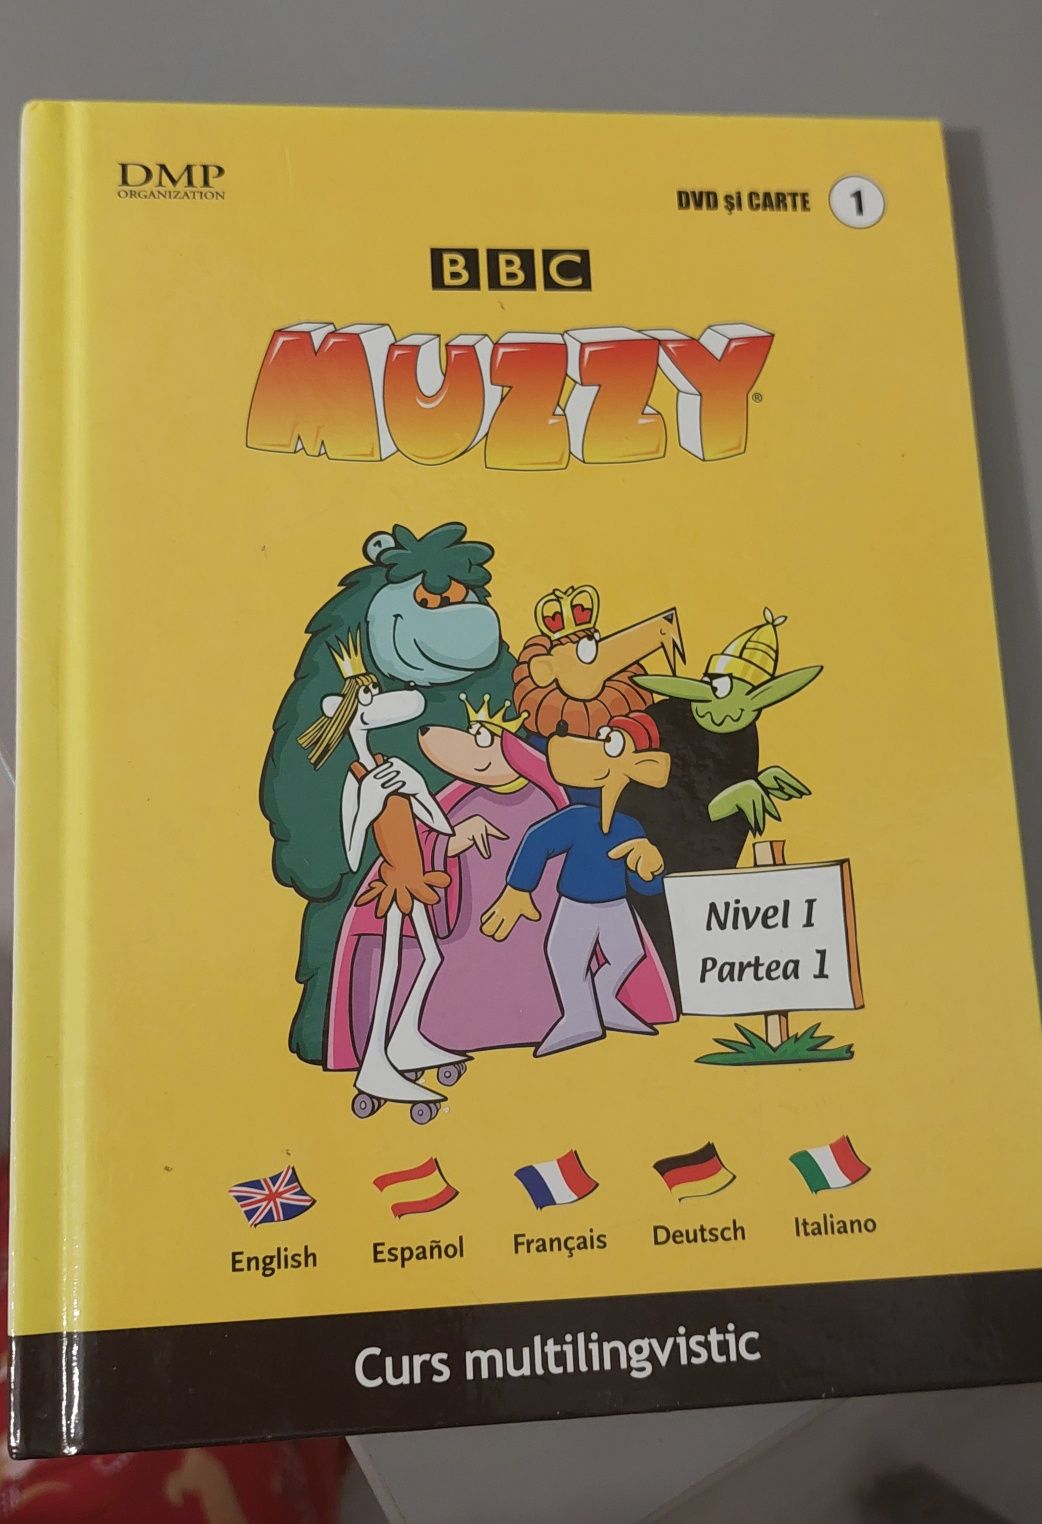 Colecția BBC Muzzy